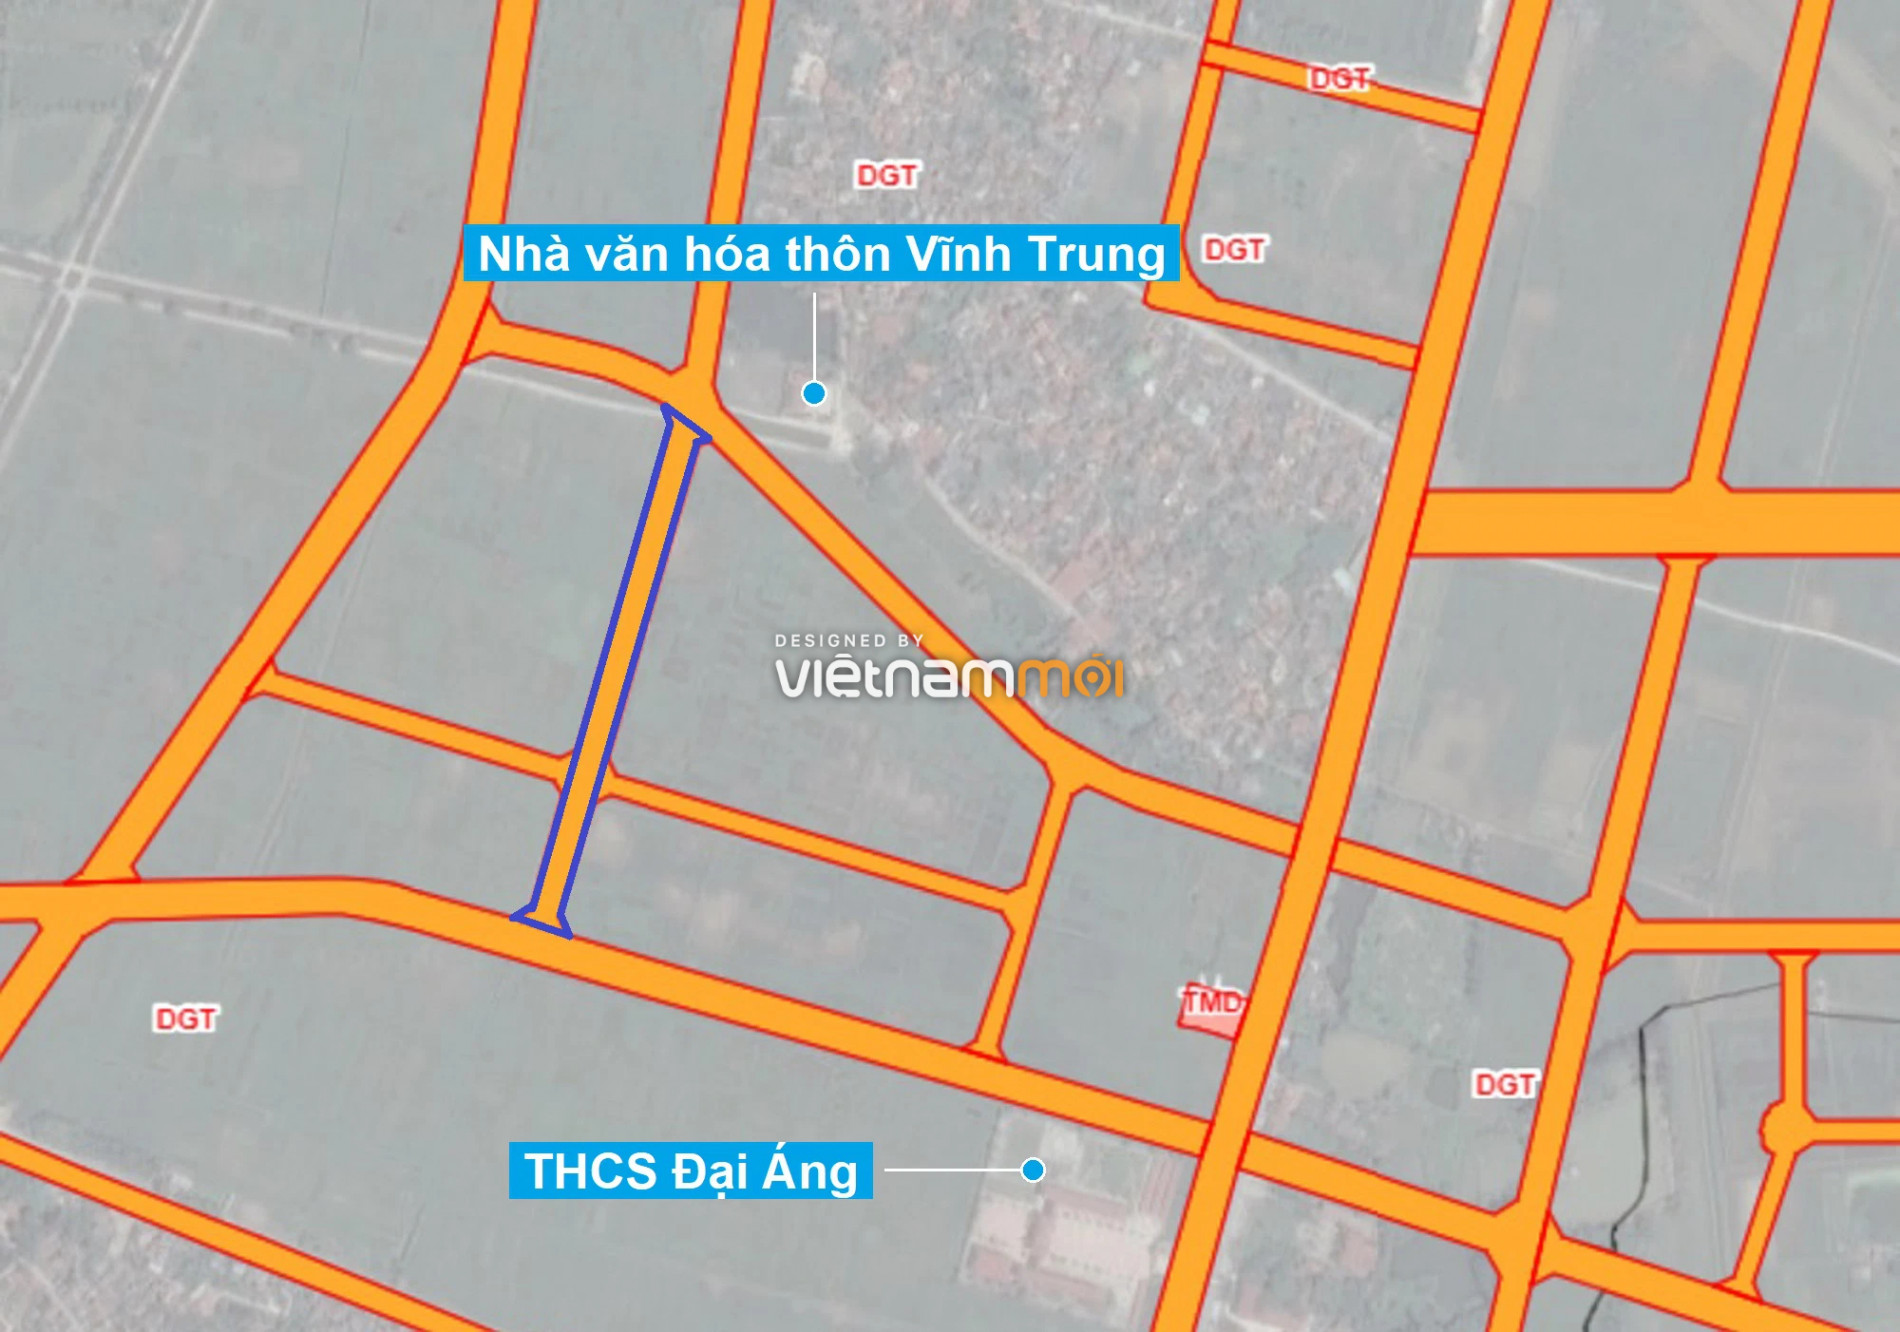 Những khu đất sắp thu hồi để mở đường ở xã Đại Áng, Thanh Trì, Hà Nội (phần 5) - Ảnh 9.